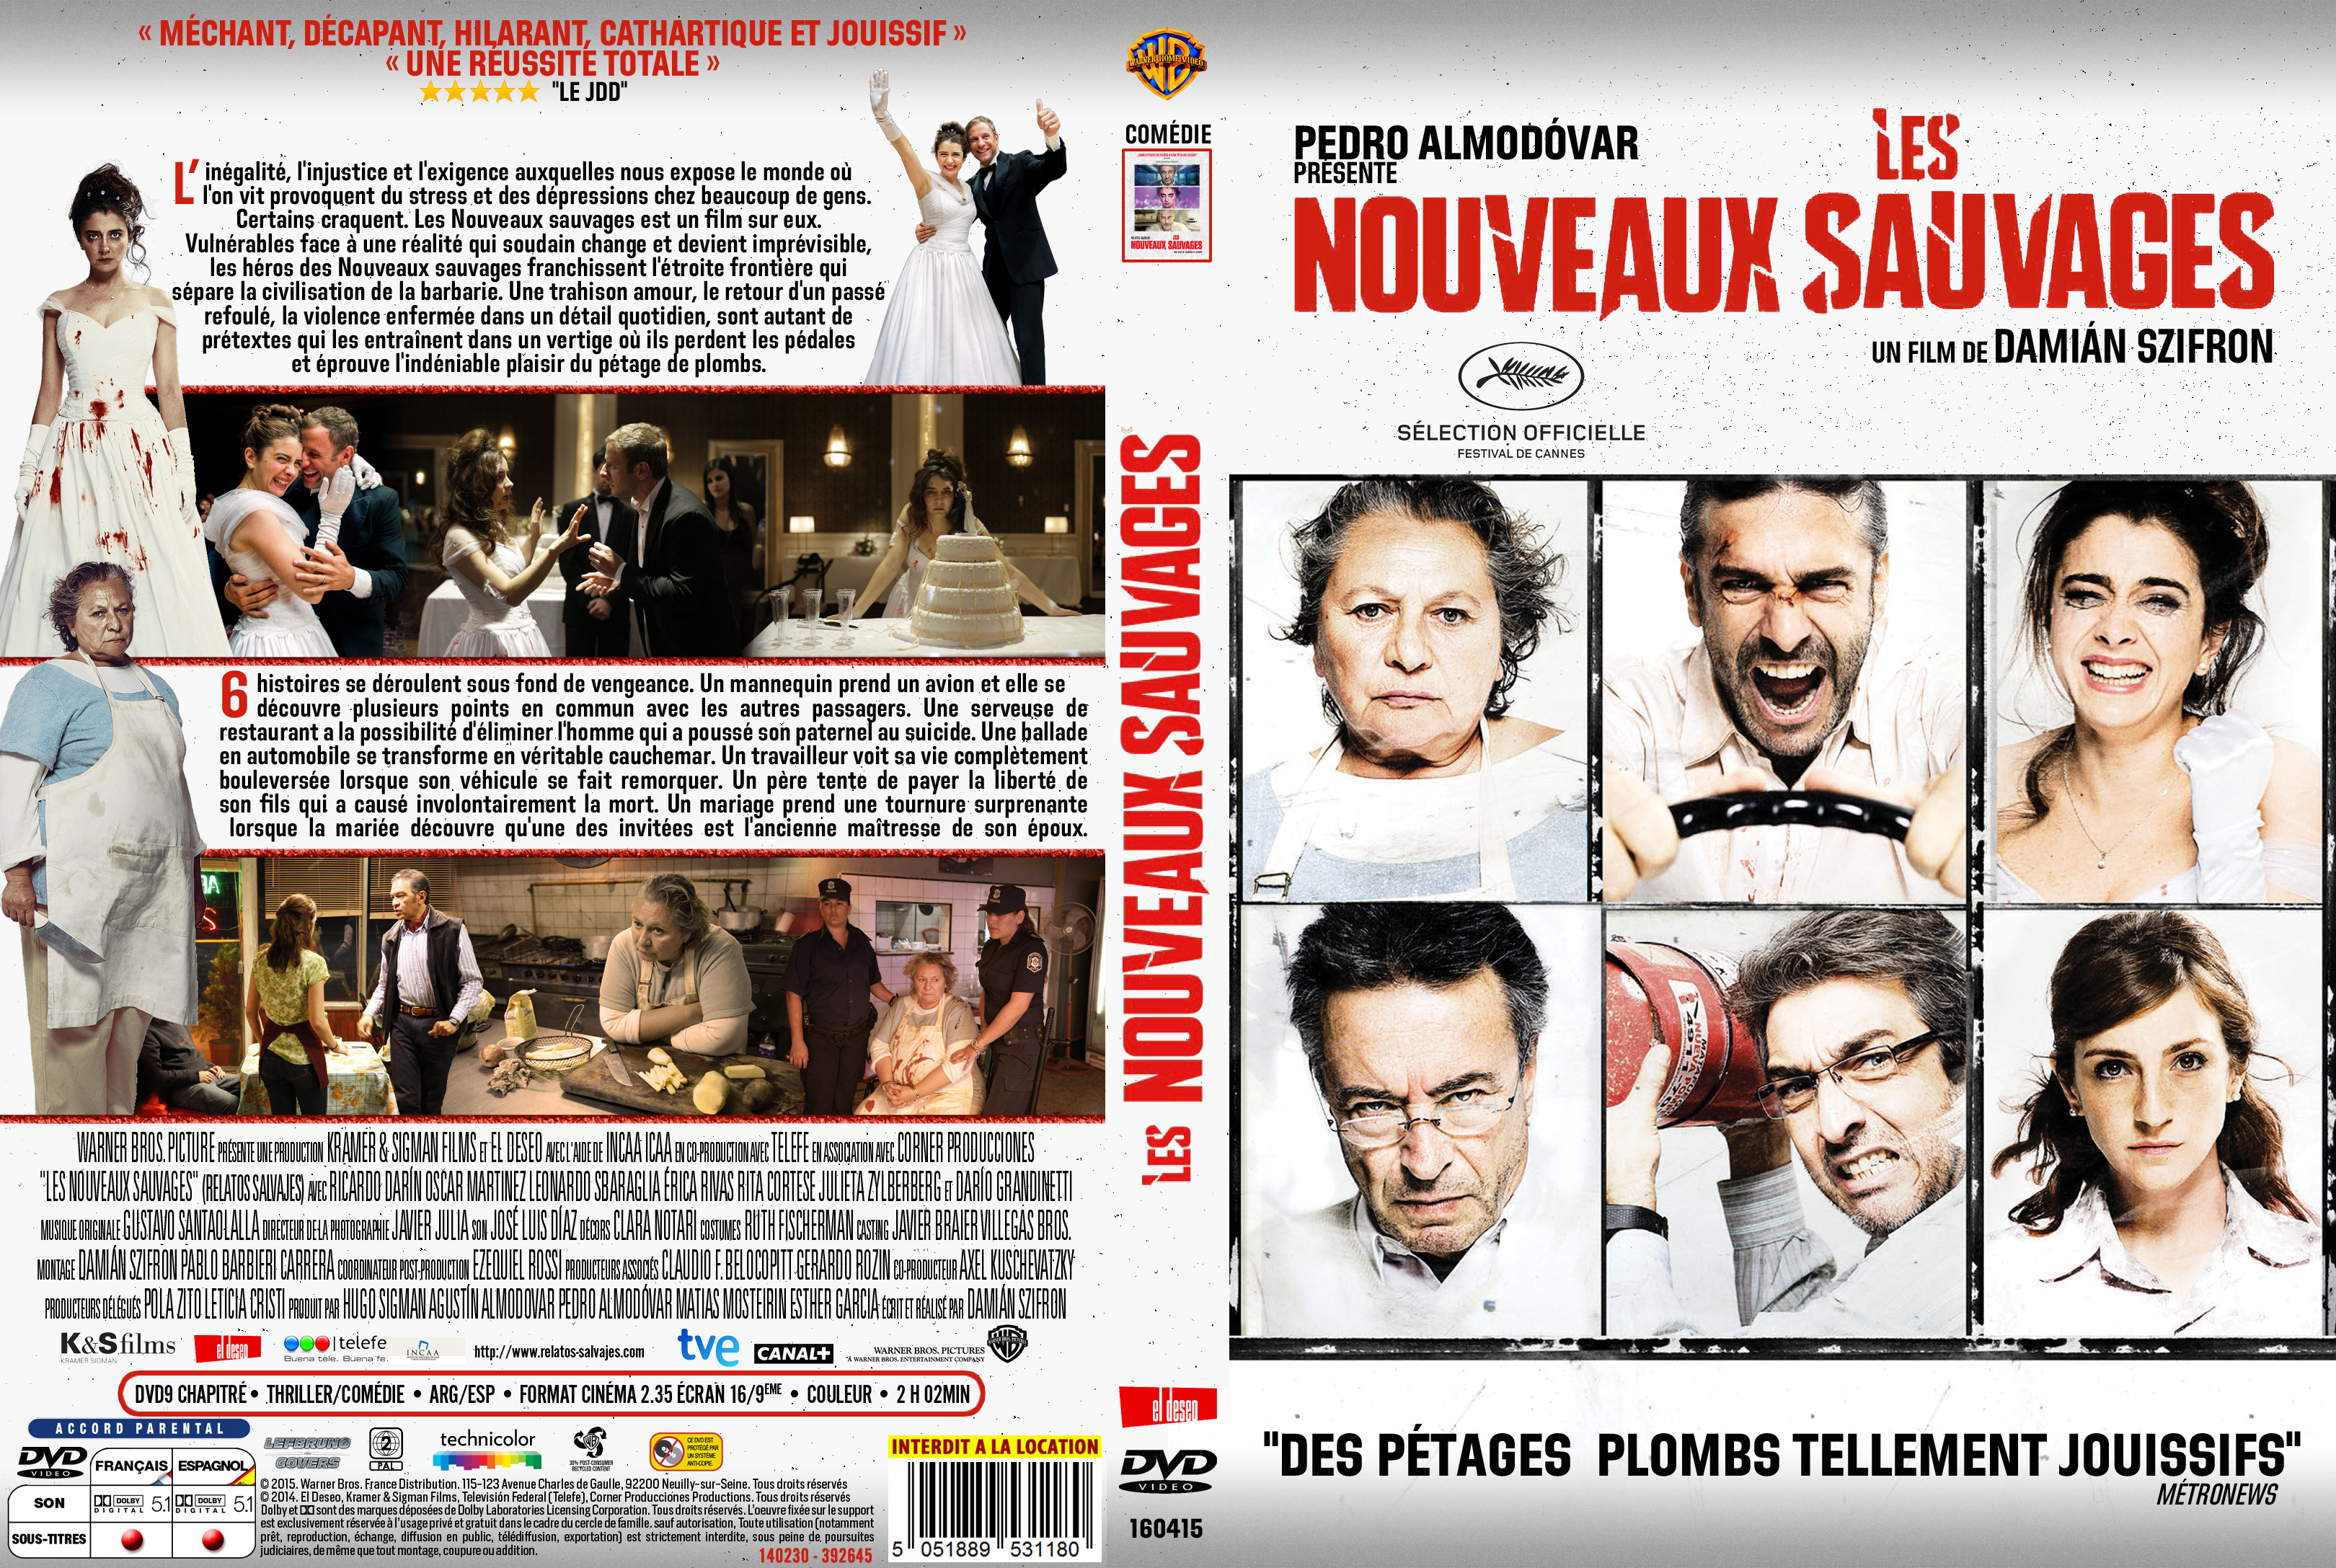 Jaquette DVD Les Nouveaux Sauvages custom